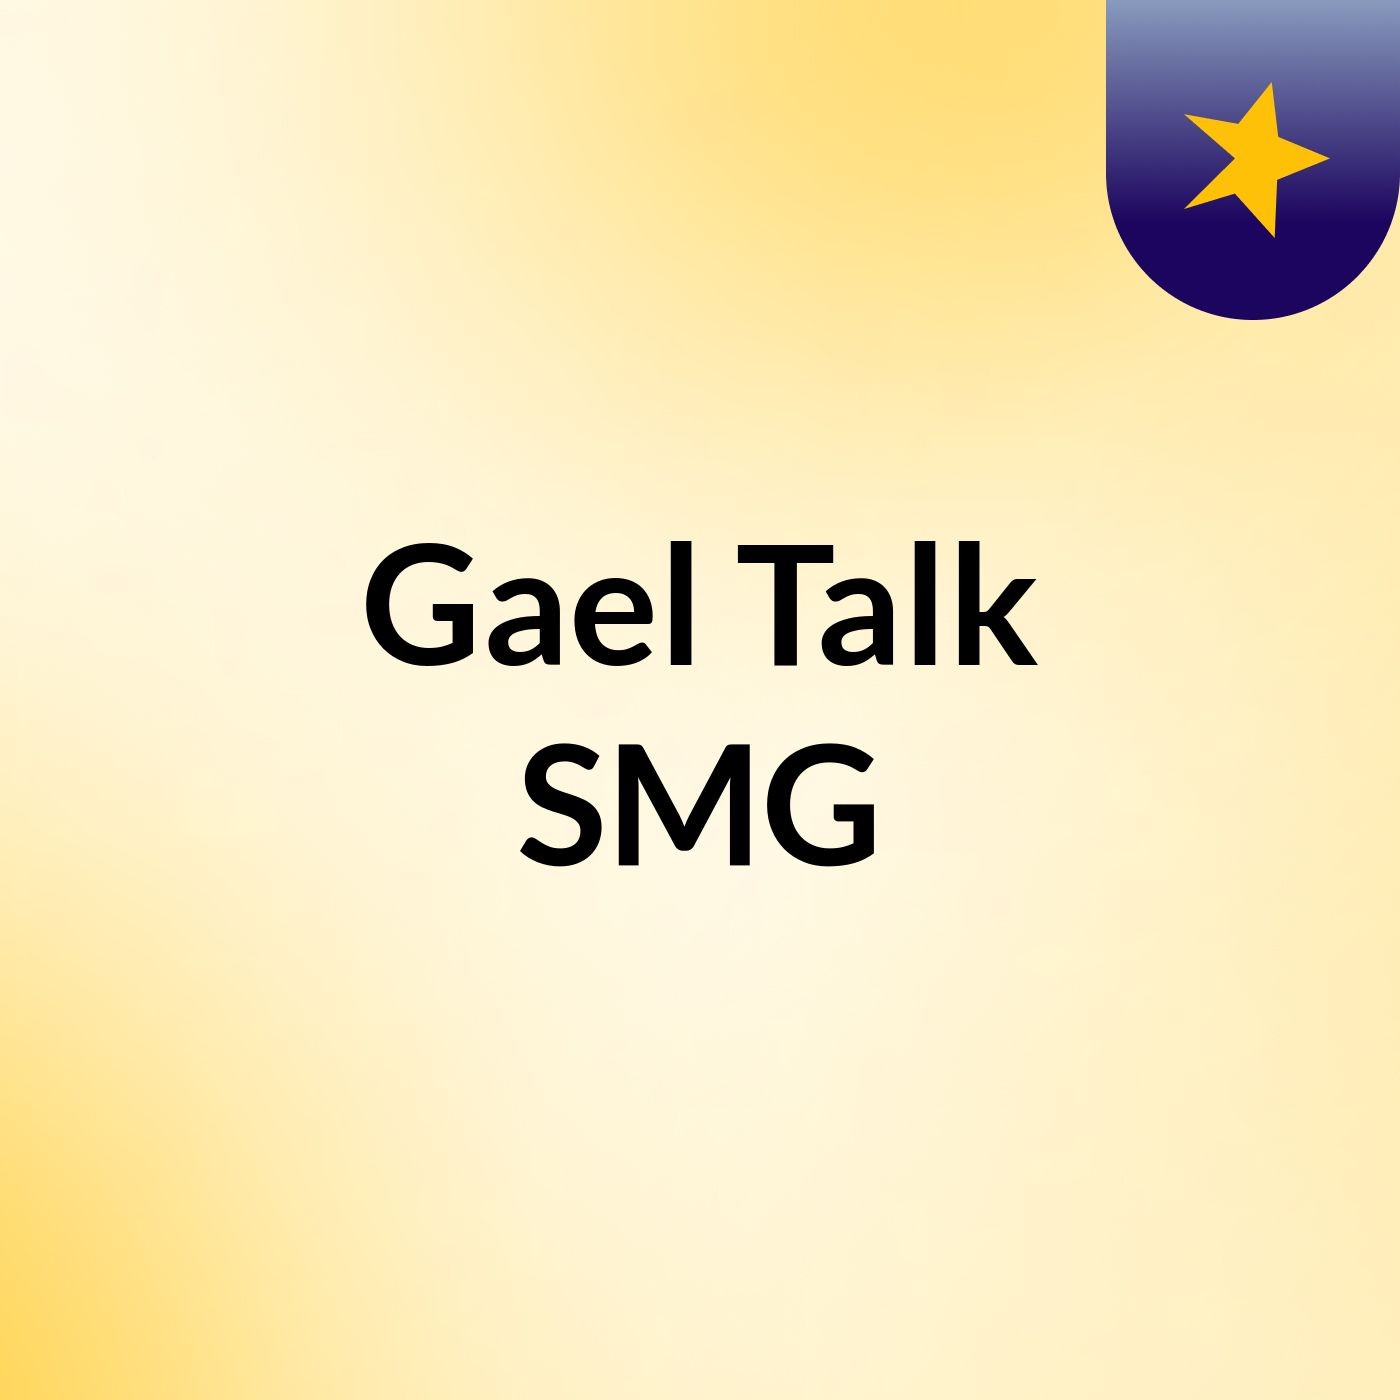 Clár 3 - Oíche Shamhna le Gaeltalk SMG